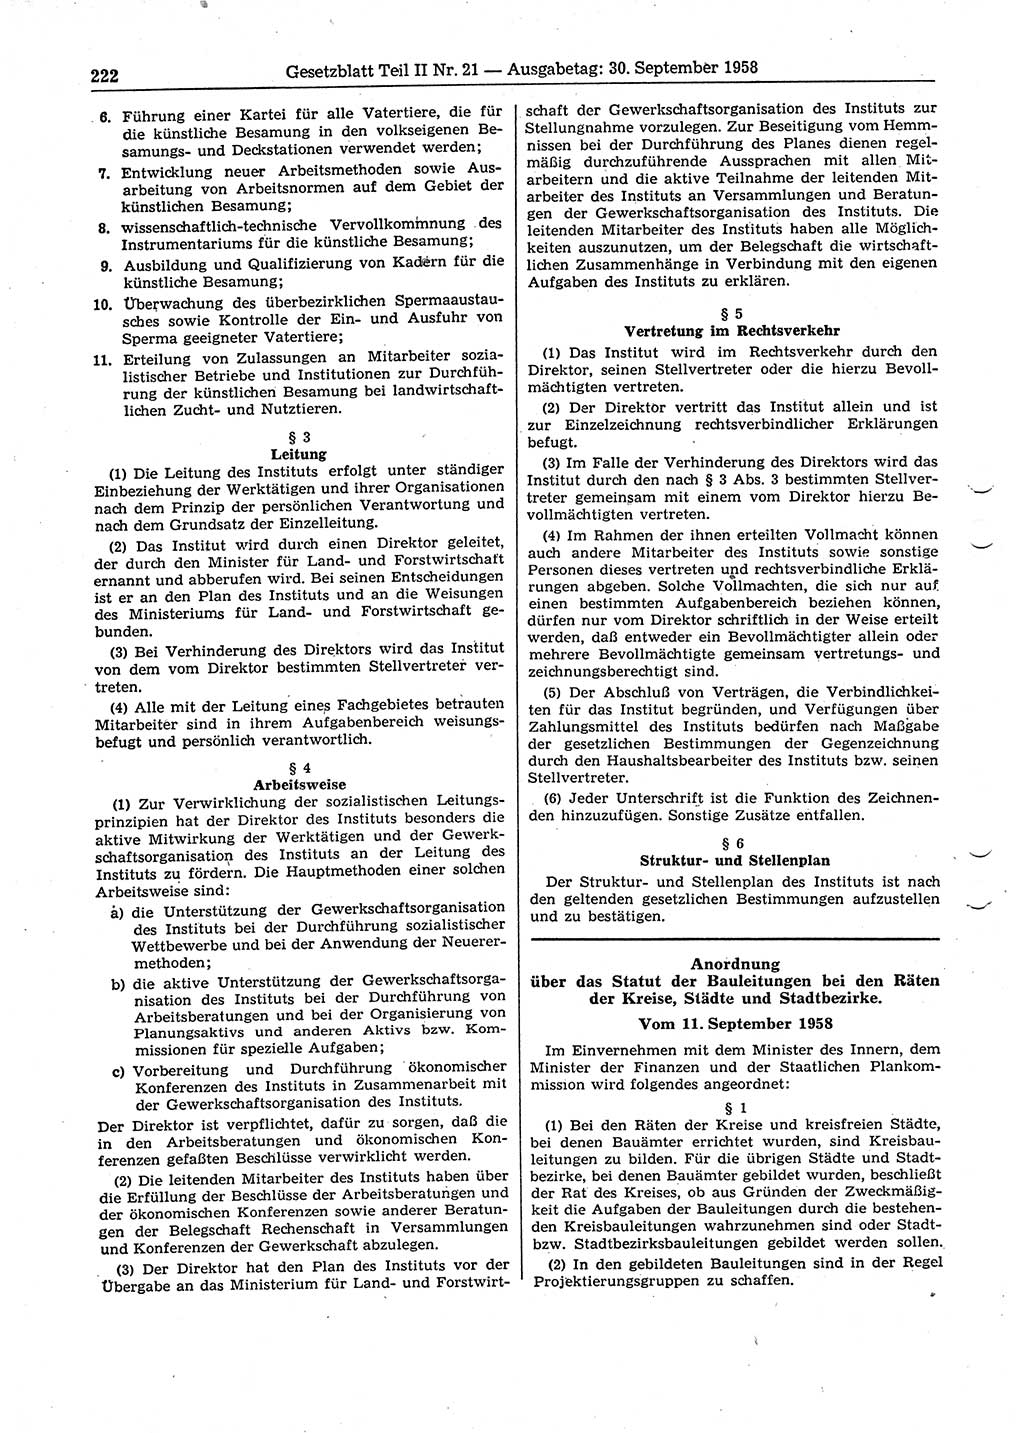 Gesetzblatt (GBl.) der Deutschen Demokratischen Republik (DDR) Teil ⅠⅠ 1958, Seite 222 (GBl. DDR ⅠⅠ 1958, S. 222)